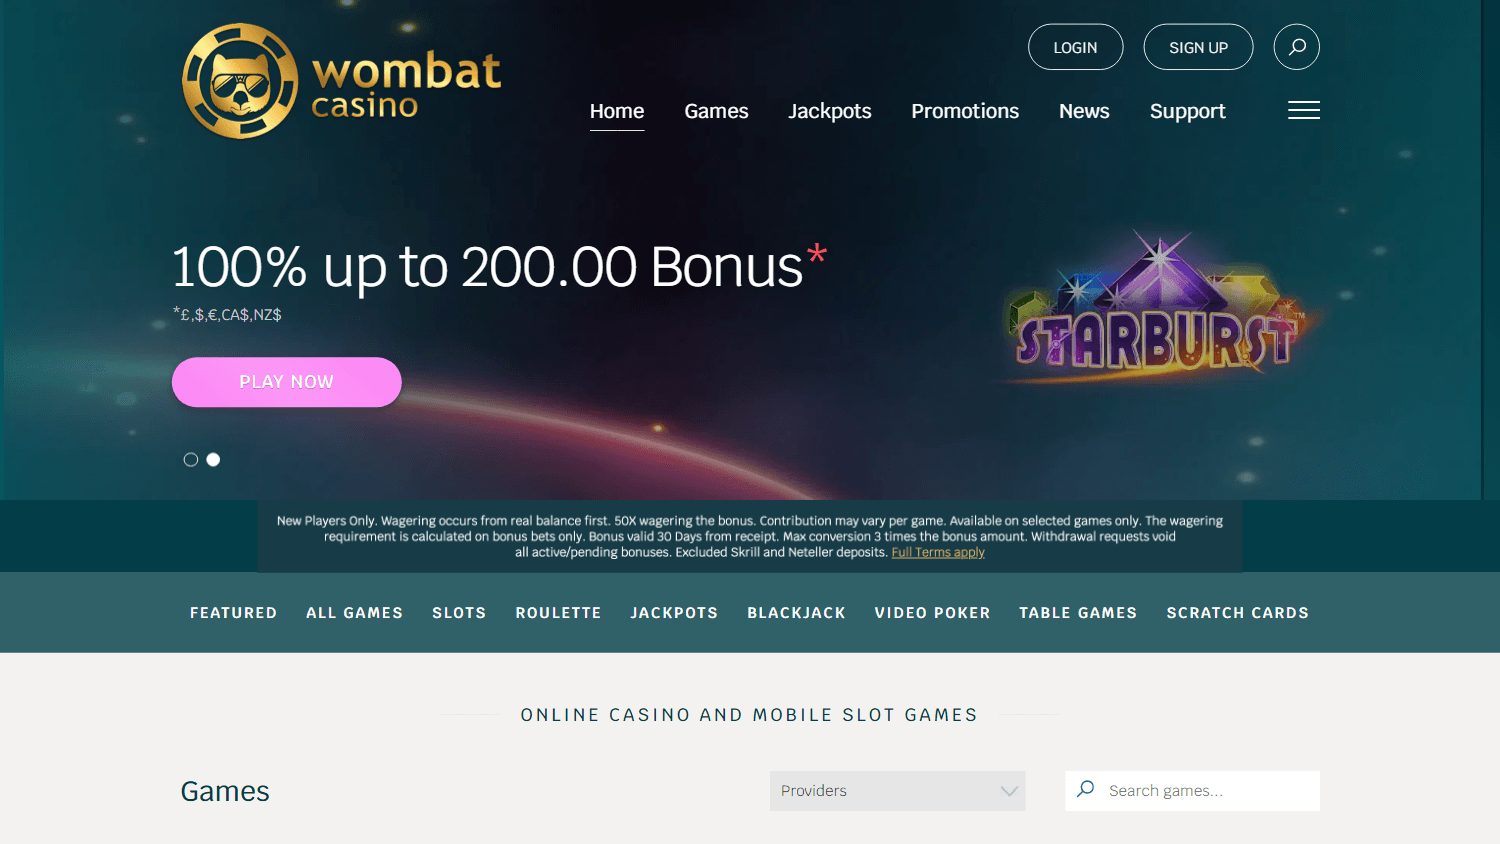 wombat_casino_homepage_desktop